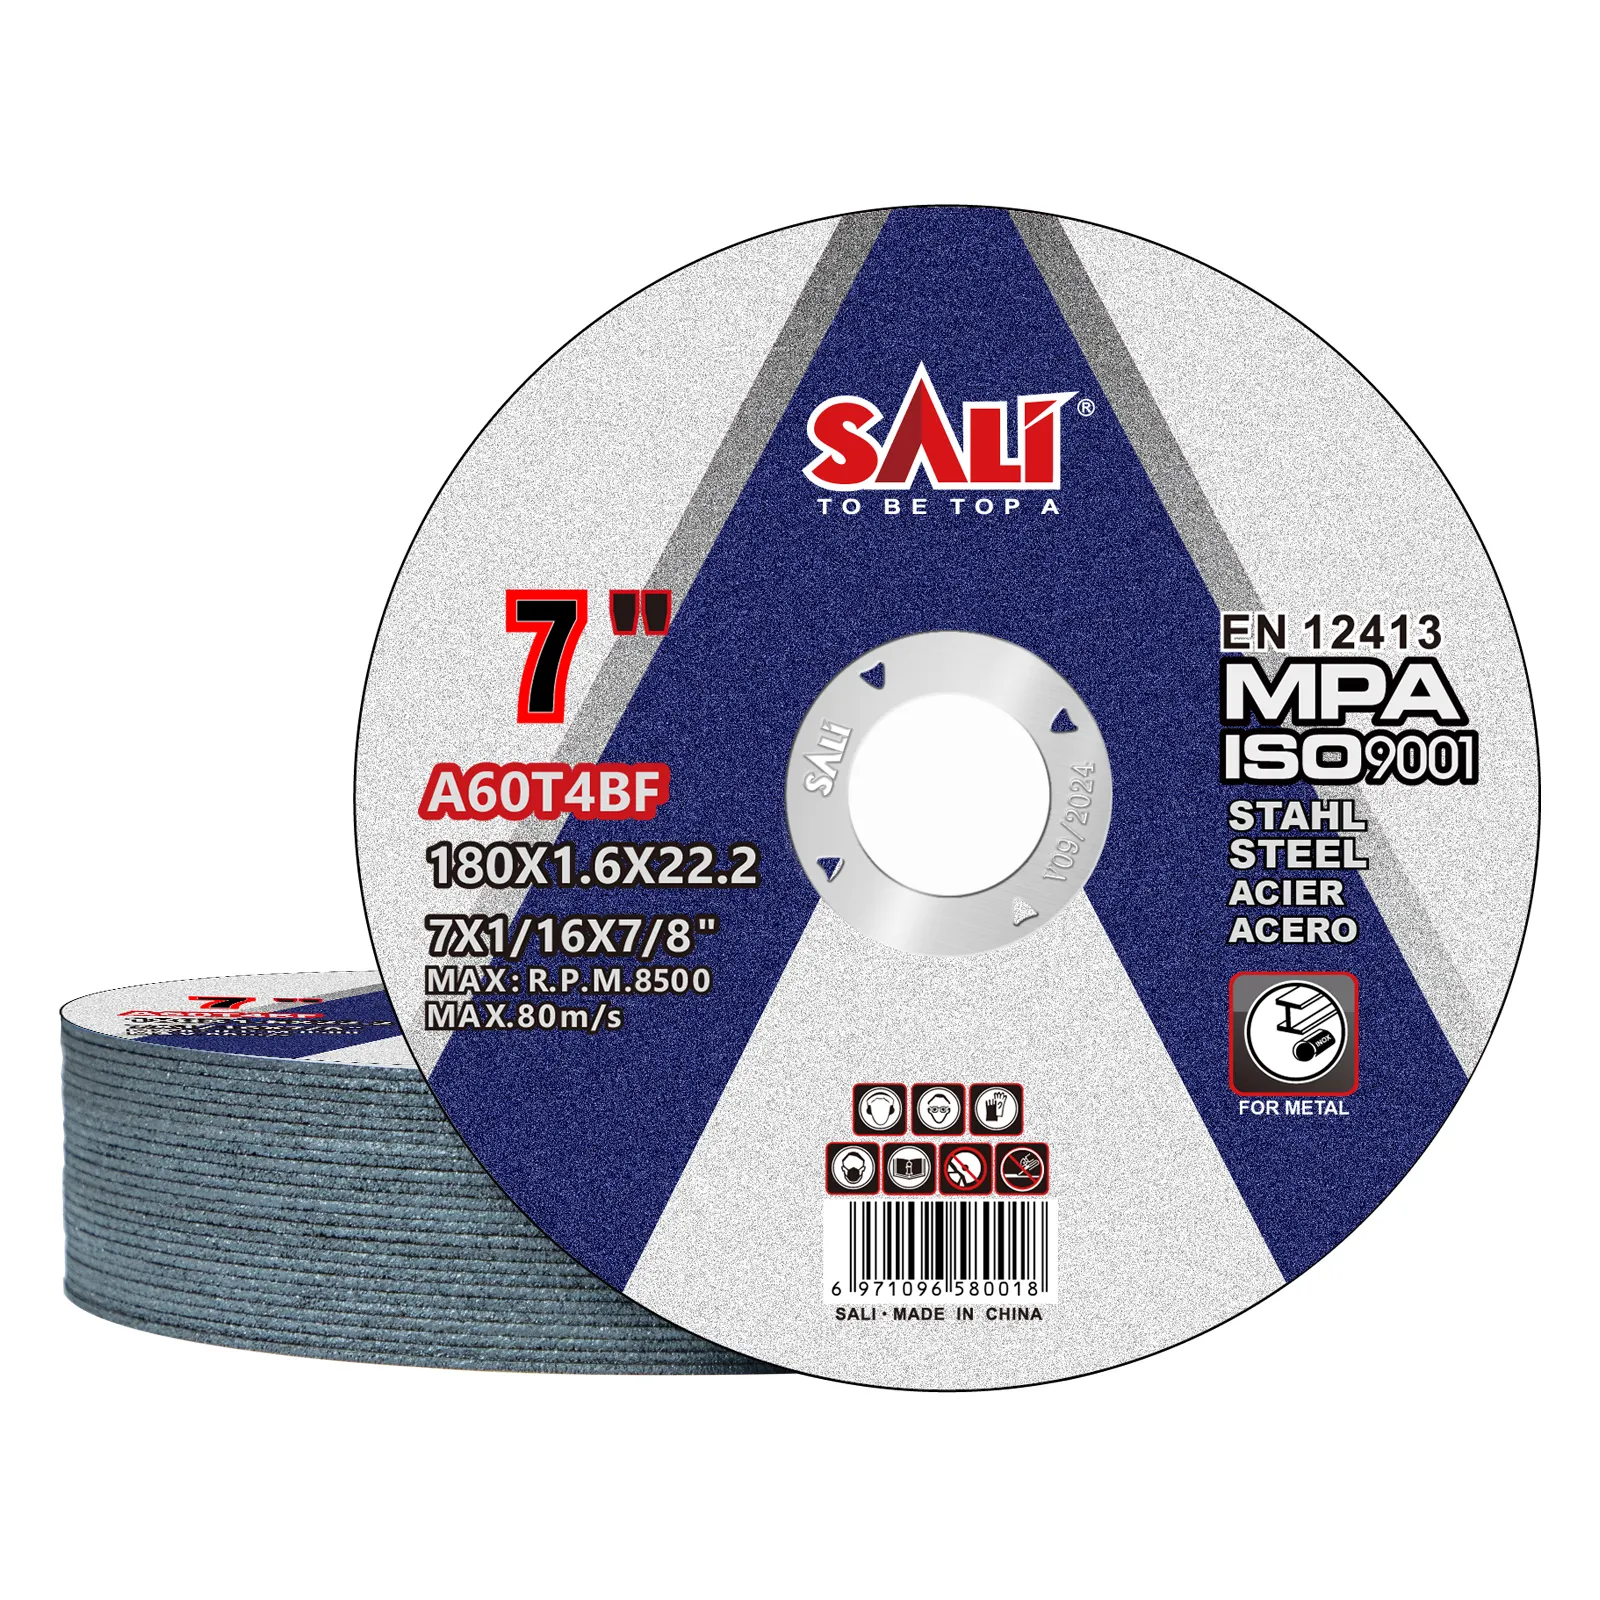 Vendite calde SALI 180*1.6*22.2mm disco da taglio in acciaio da 7 pollici abrasivi OEM personalizzati dischi da taglio in metallo